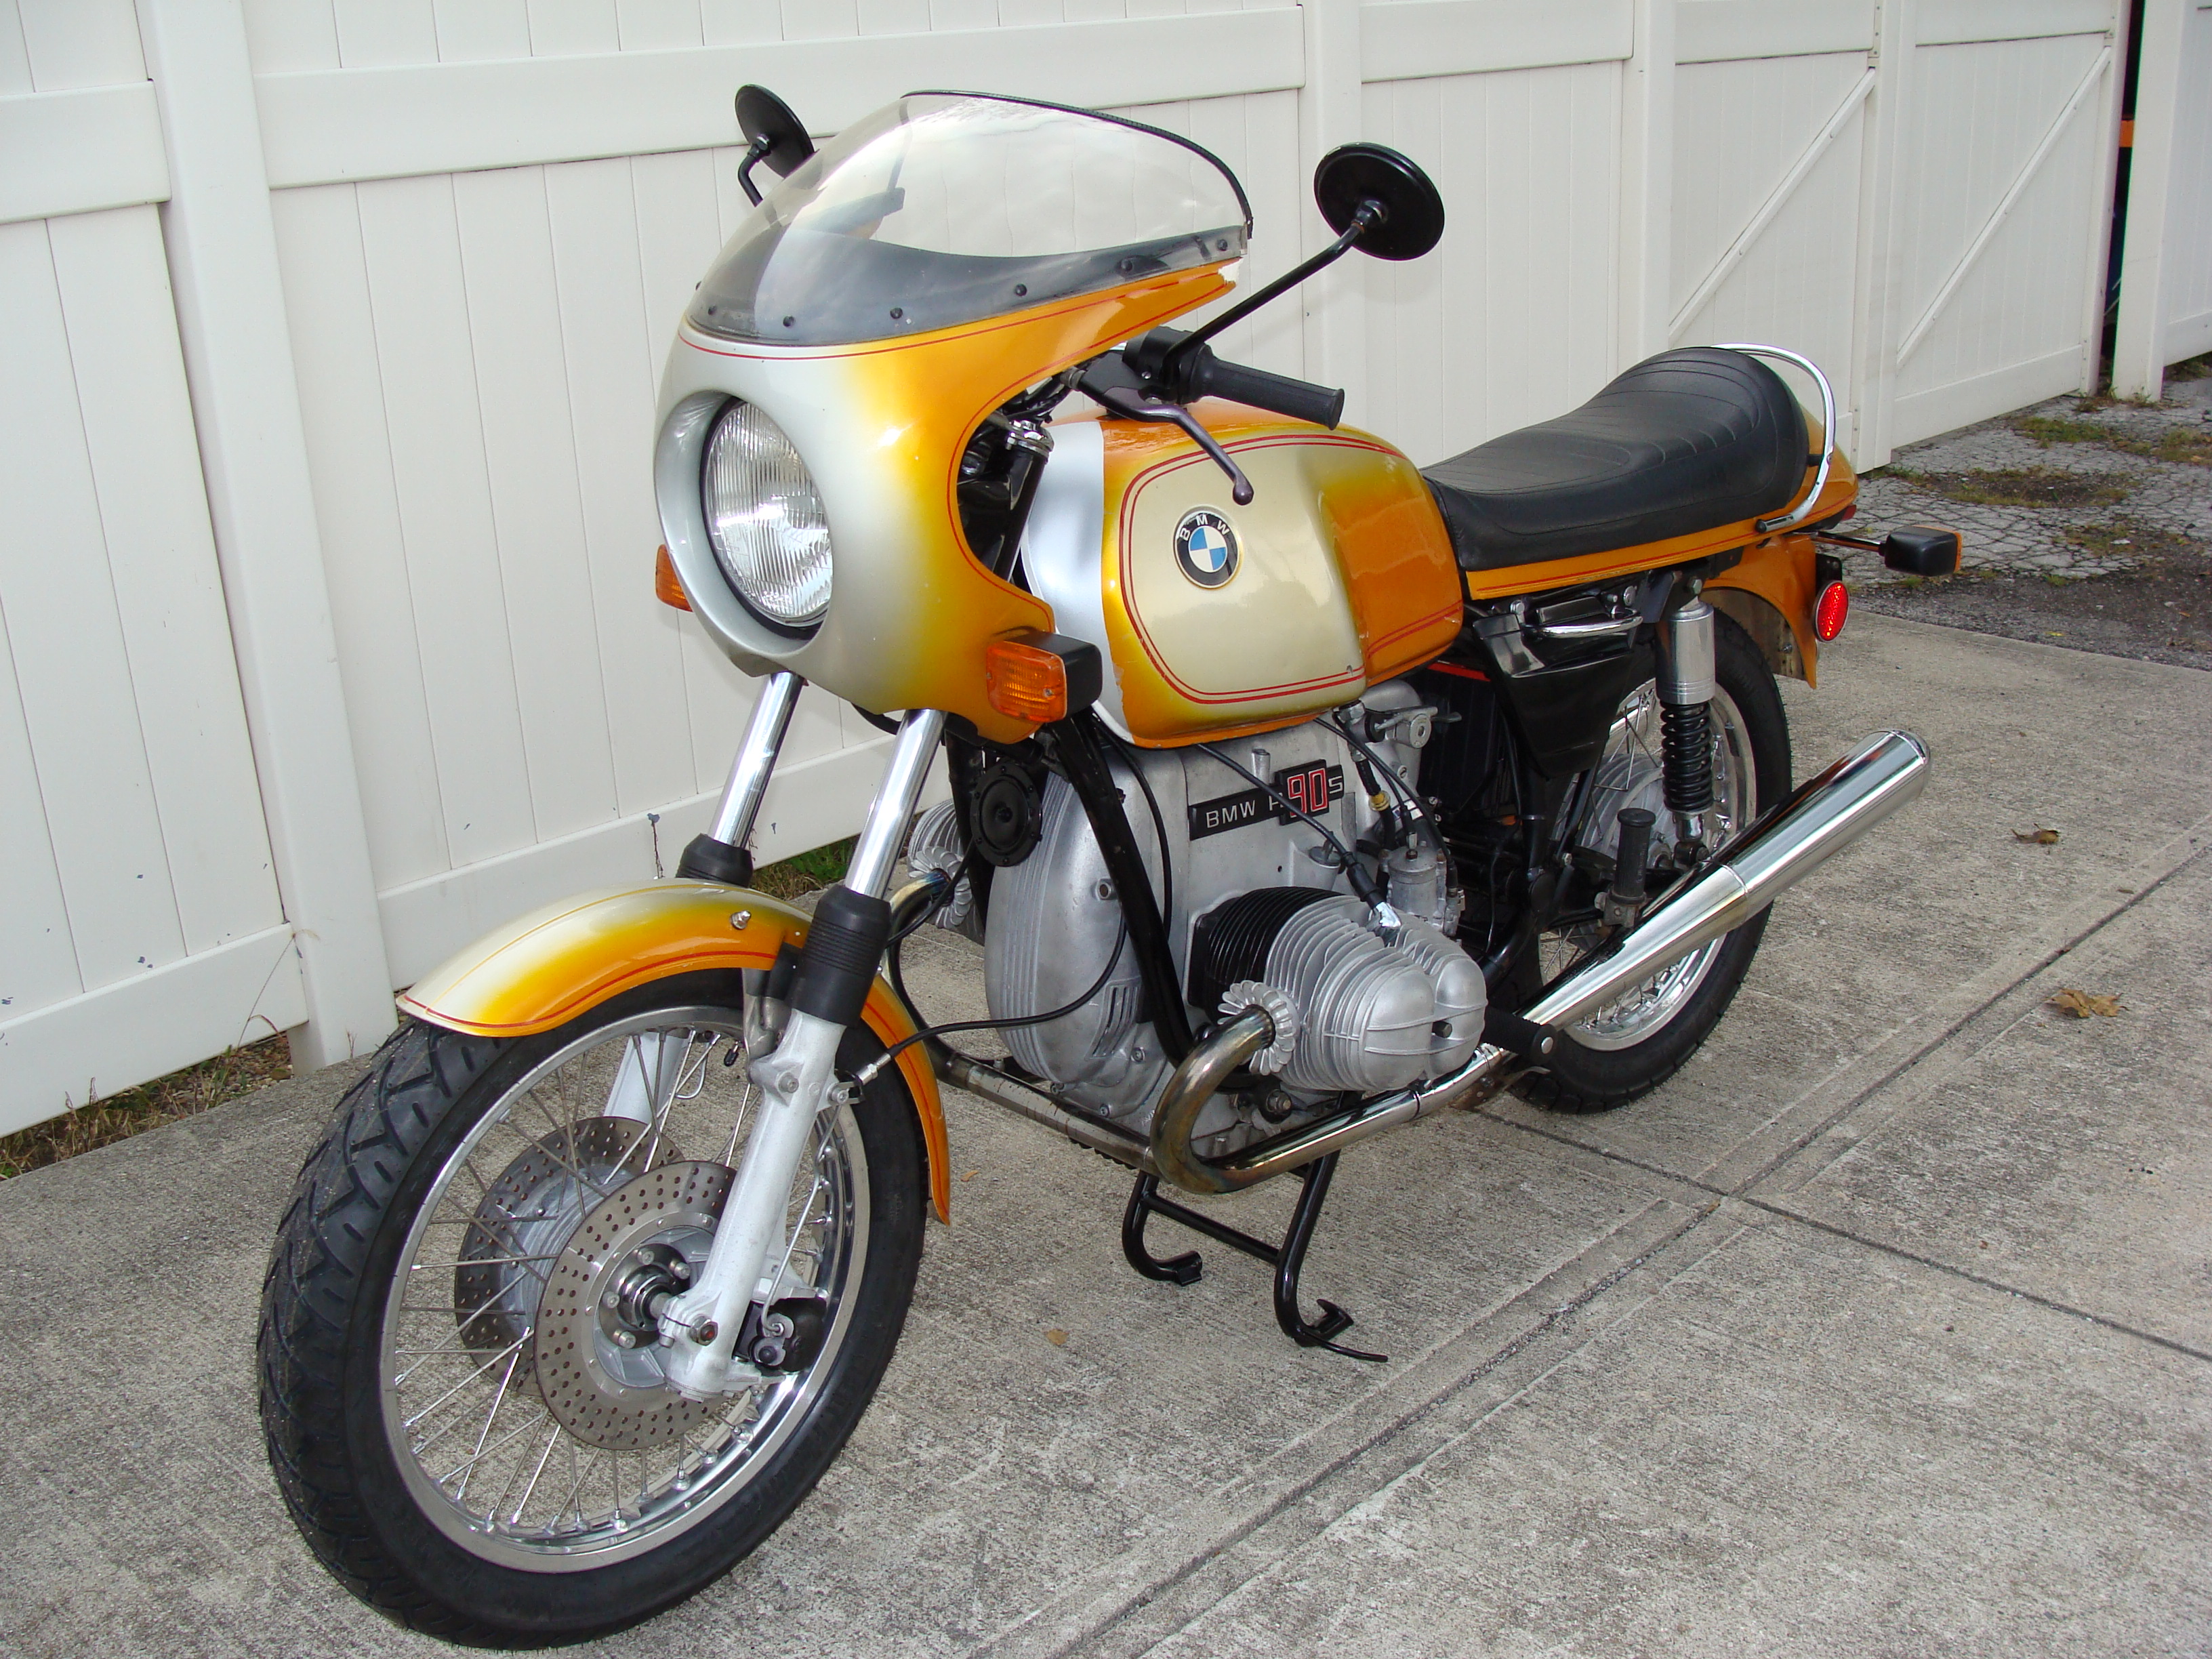 Bmw daytona orange motorycyle #5